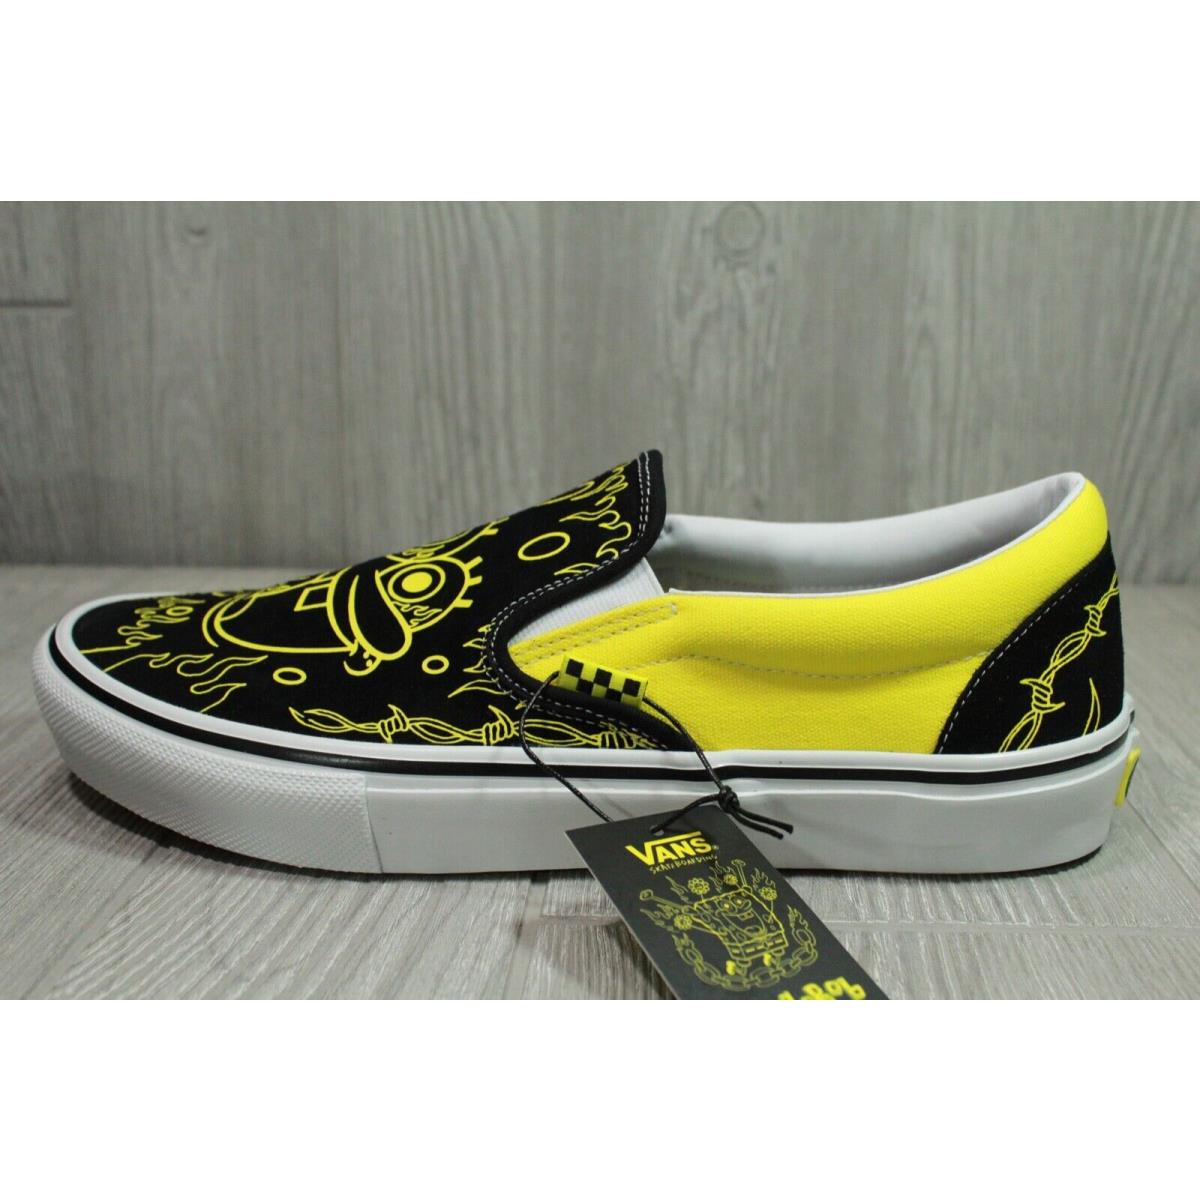 67 Vans x Spongebob Gigliotti Men`s Skate Slip On Shoes Black Yellow Size 11.5